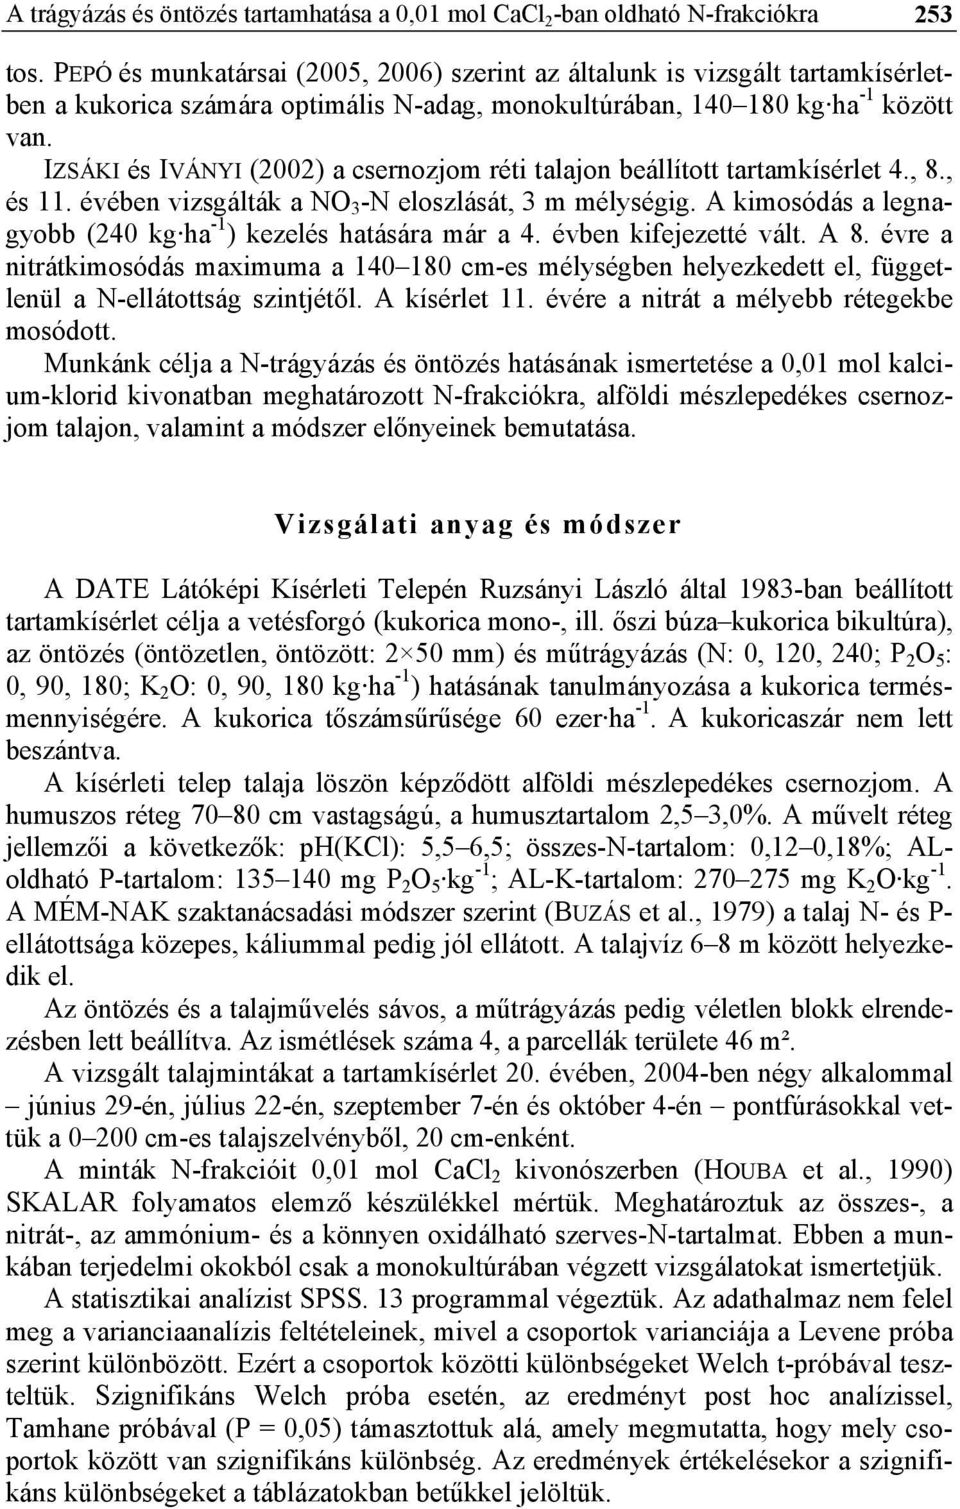 IZSÁKI és IVÁNYI (2002) a csernozjom réti talajon beállított tartamkísérlet 4., 8., és 11. évében vizsgálták a NO 3 -N eloszlását, 3 m mélységig.